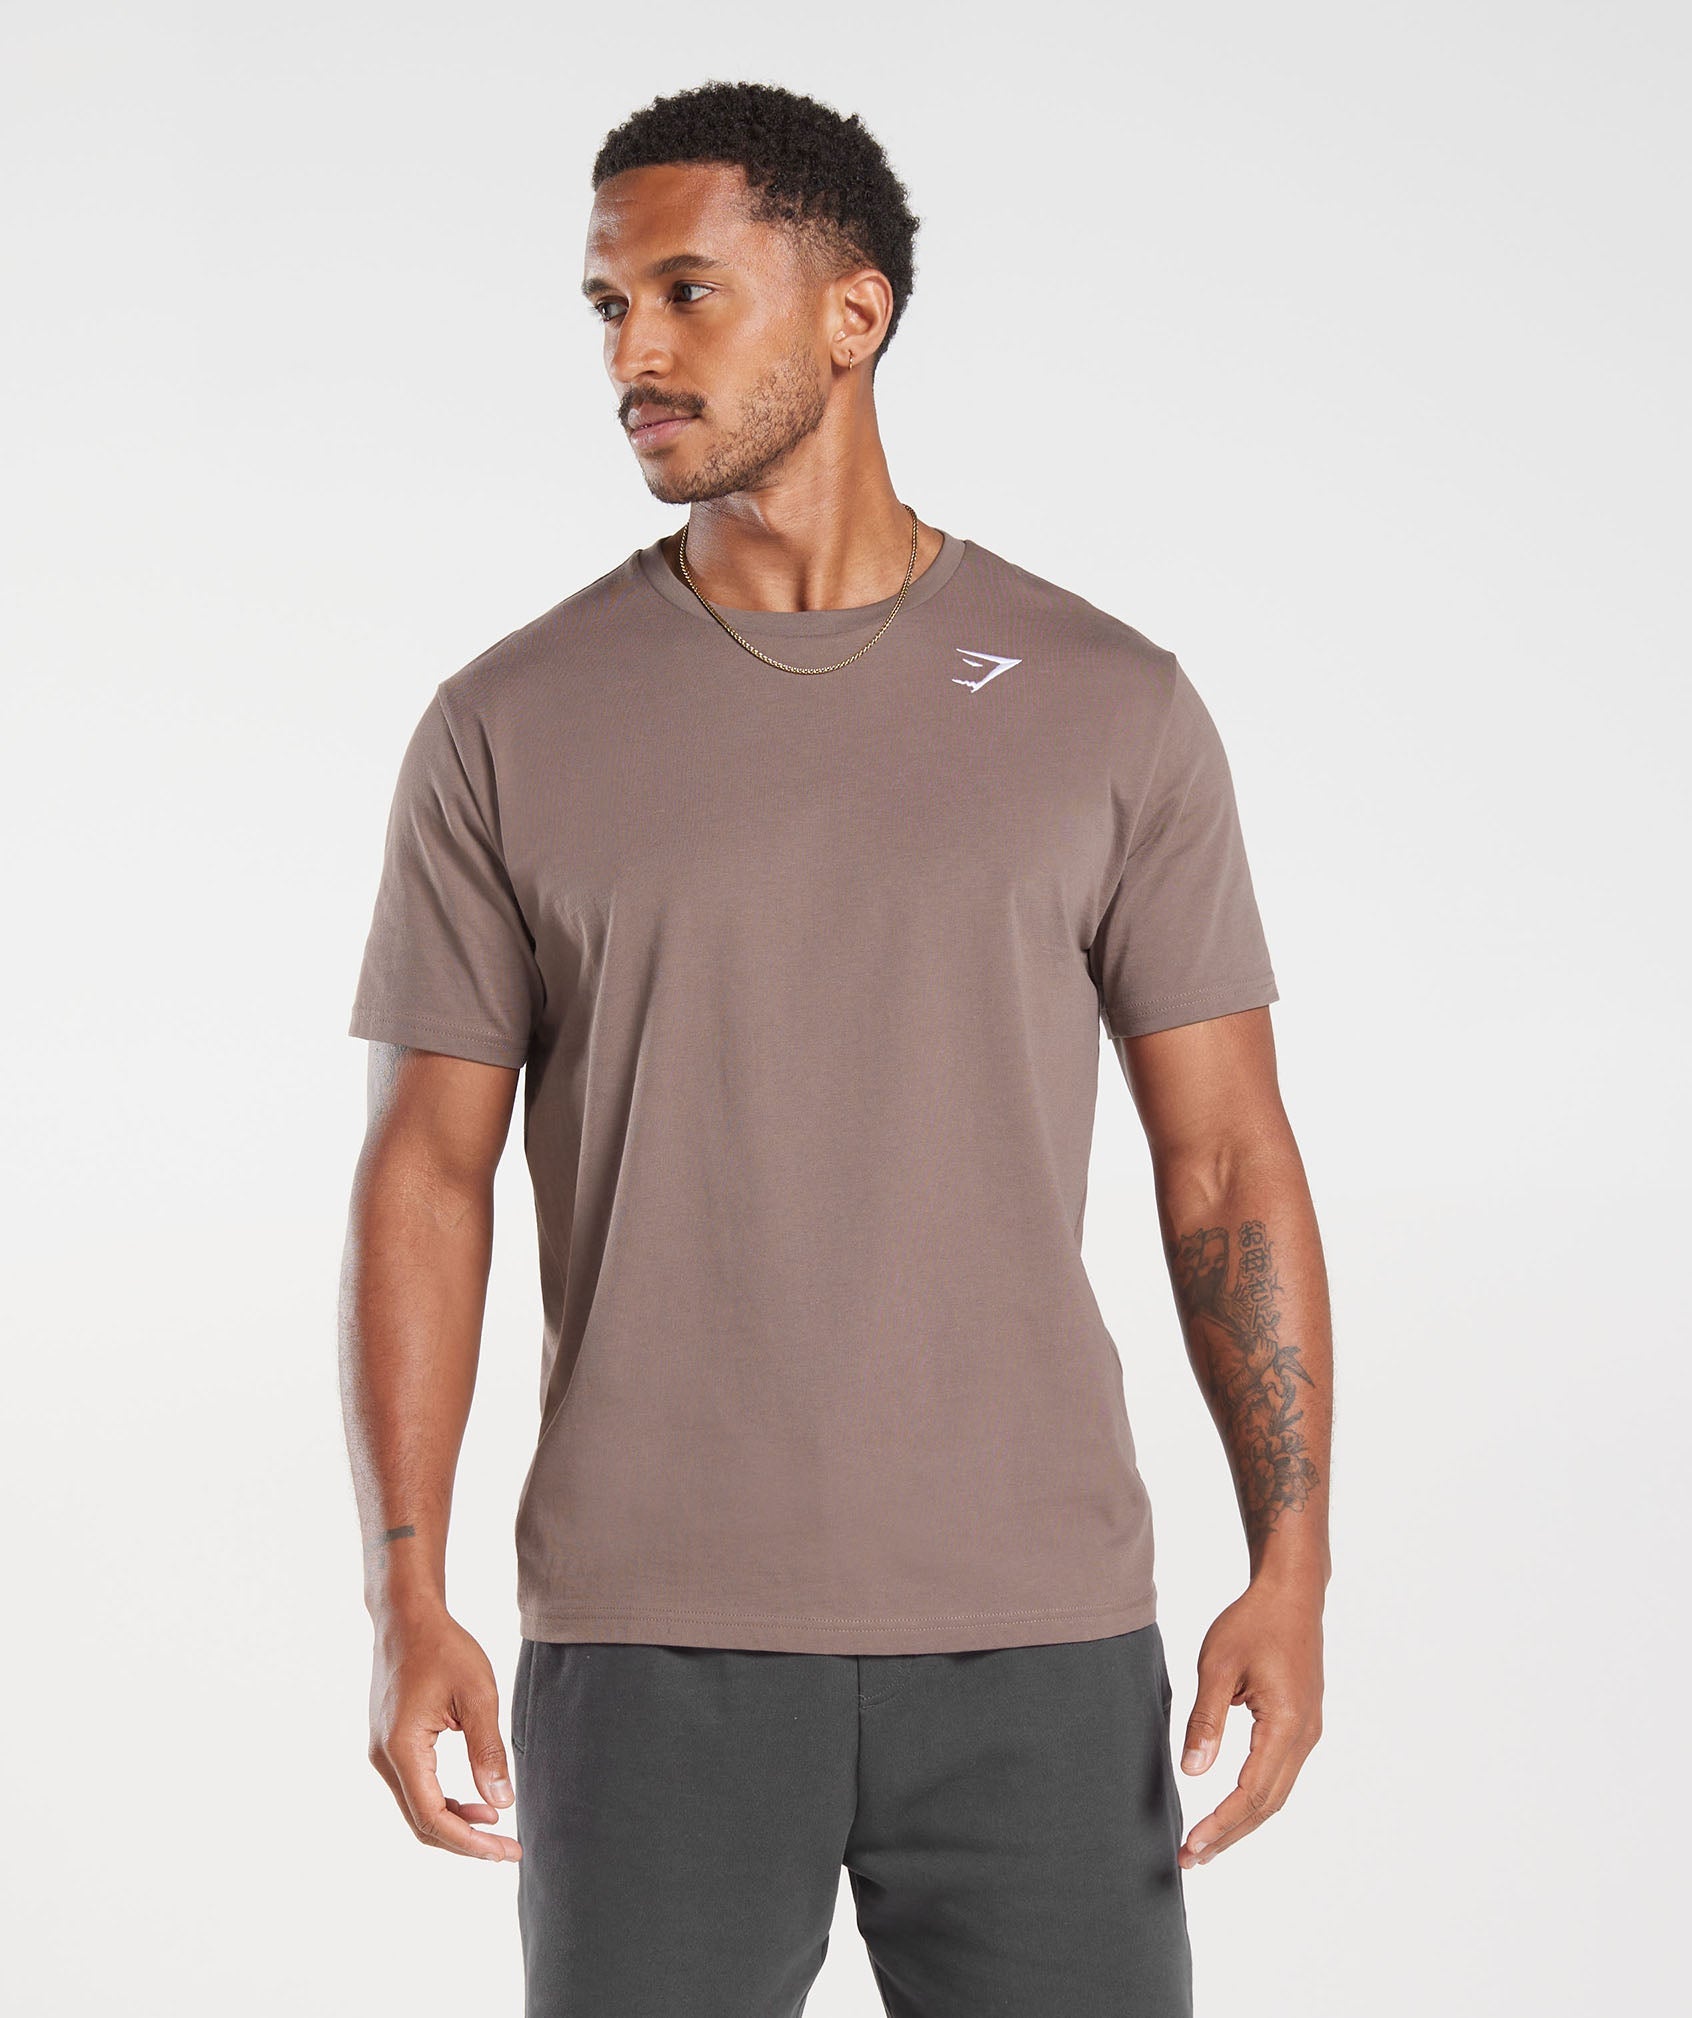 Gymshark Crest T-Shirt - Truffle Brown